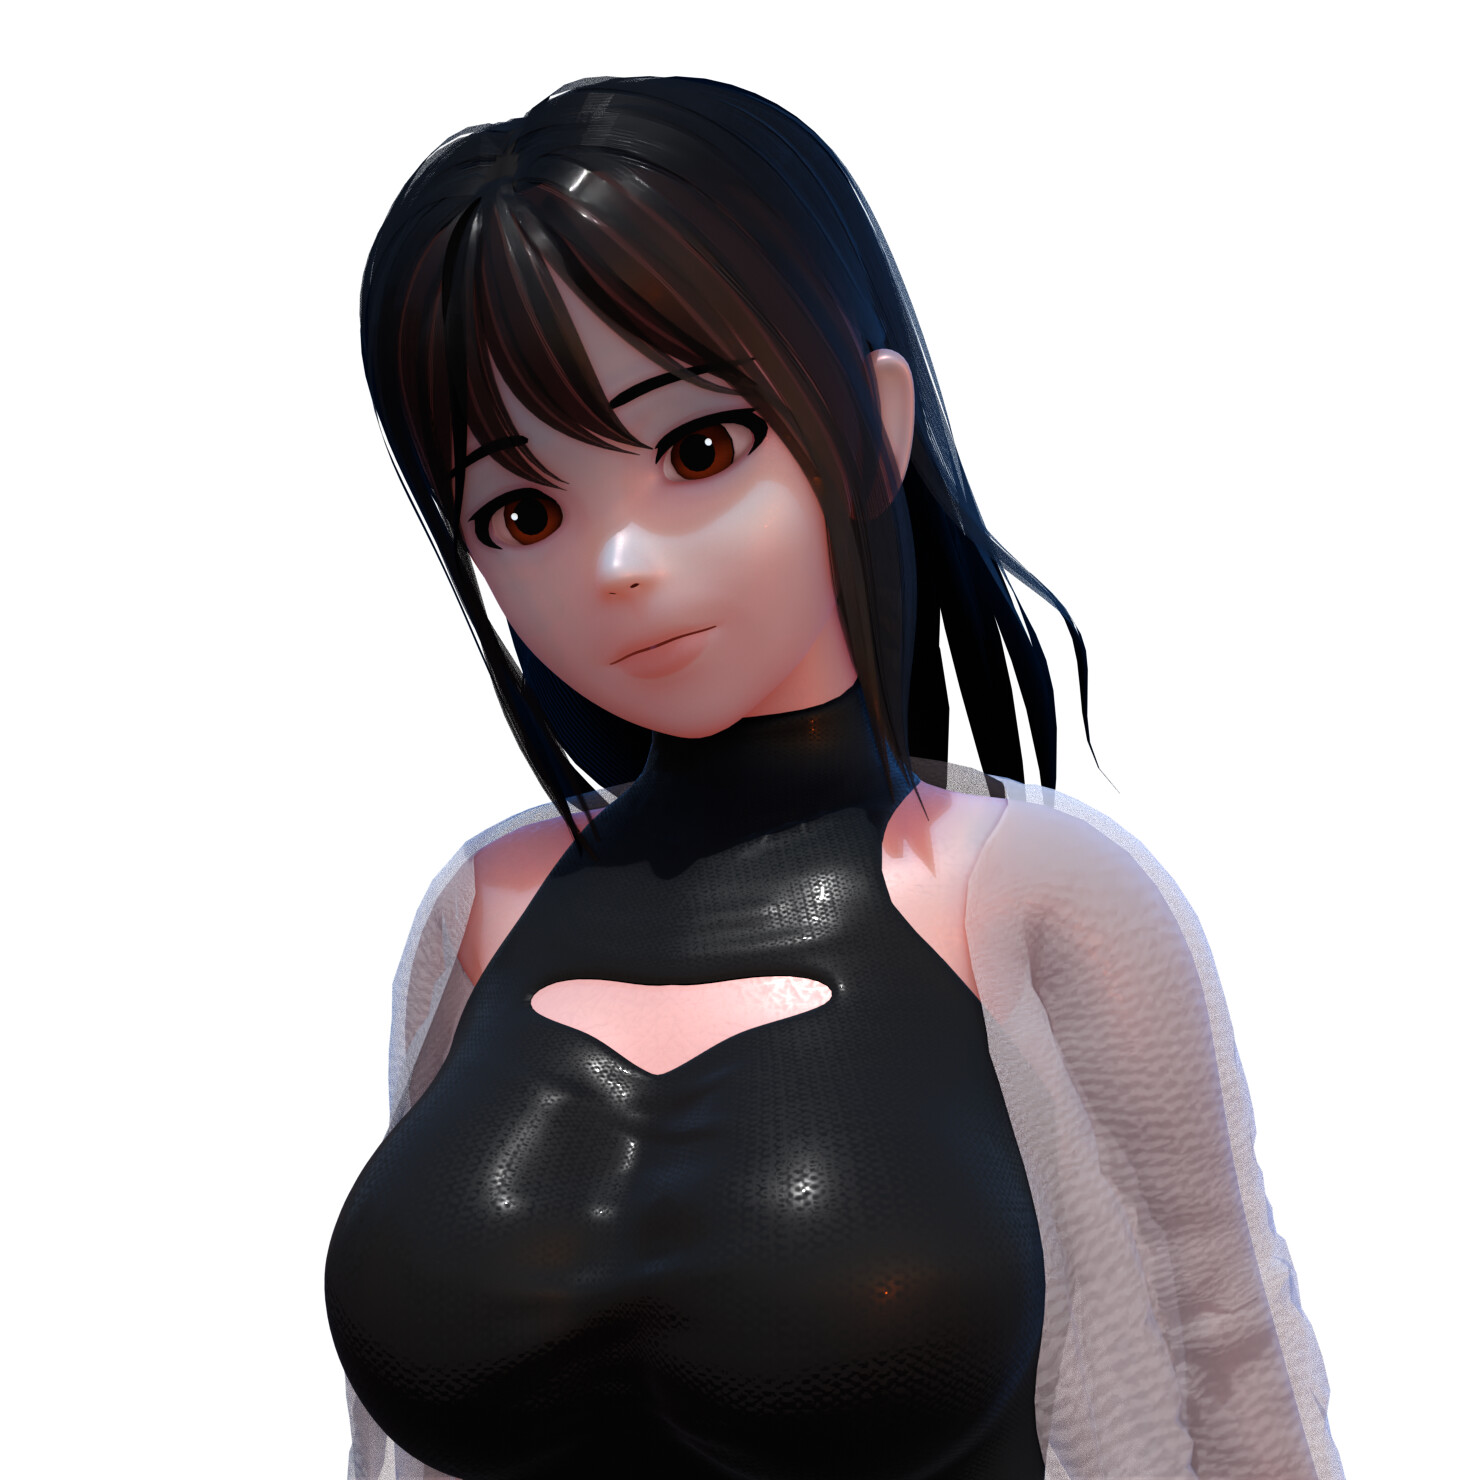 ArtStation - Blender 3D character creation